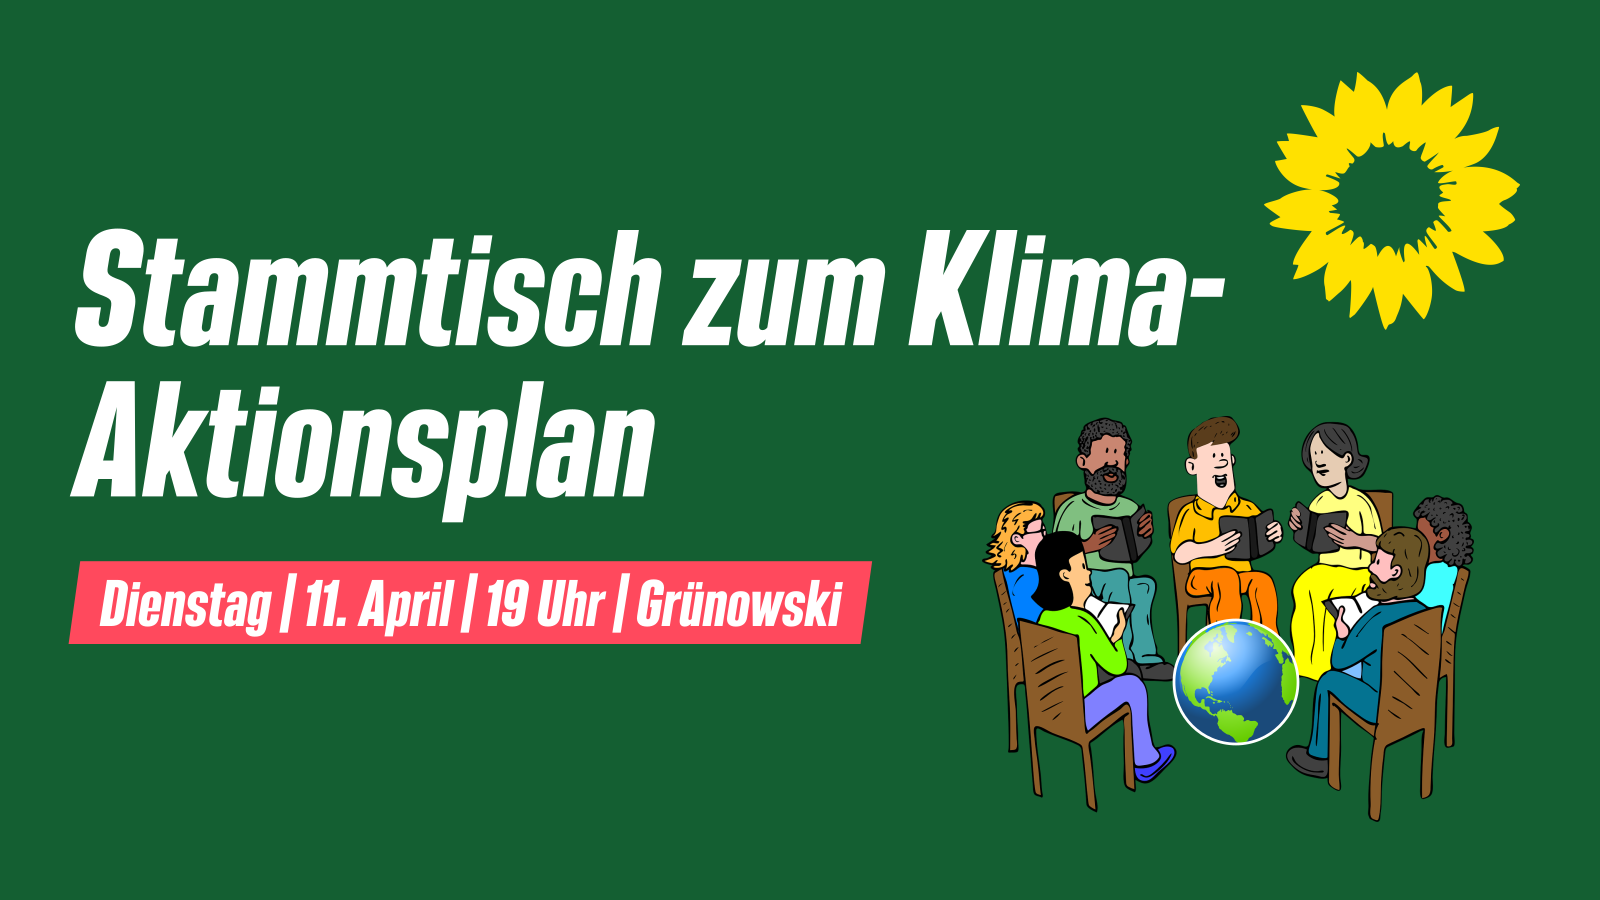 Sharepic mit folgendem Text: "Stammtisch zum Klima-Aktionsplan. Dienstag, den 11. April um 19 Uhr im Grünowski."